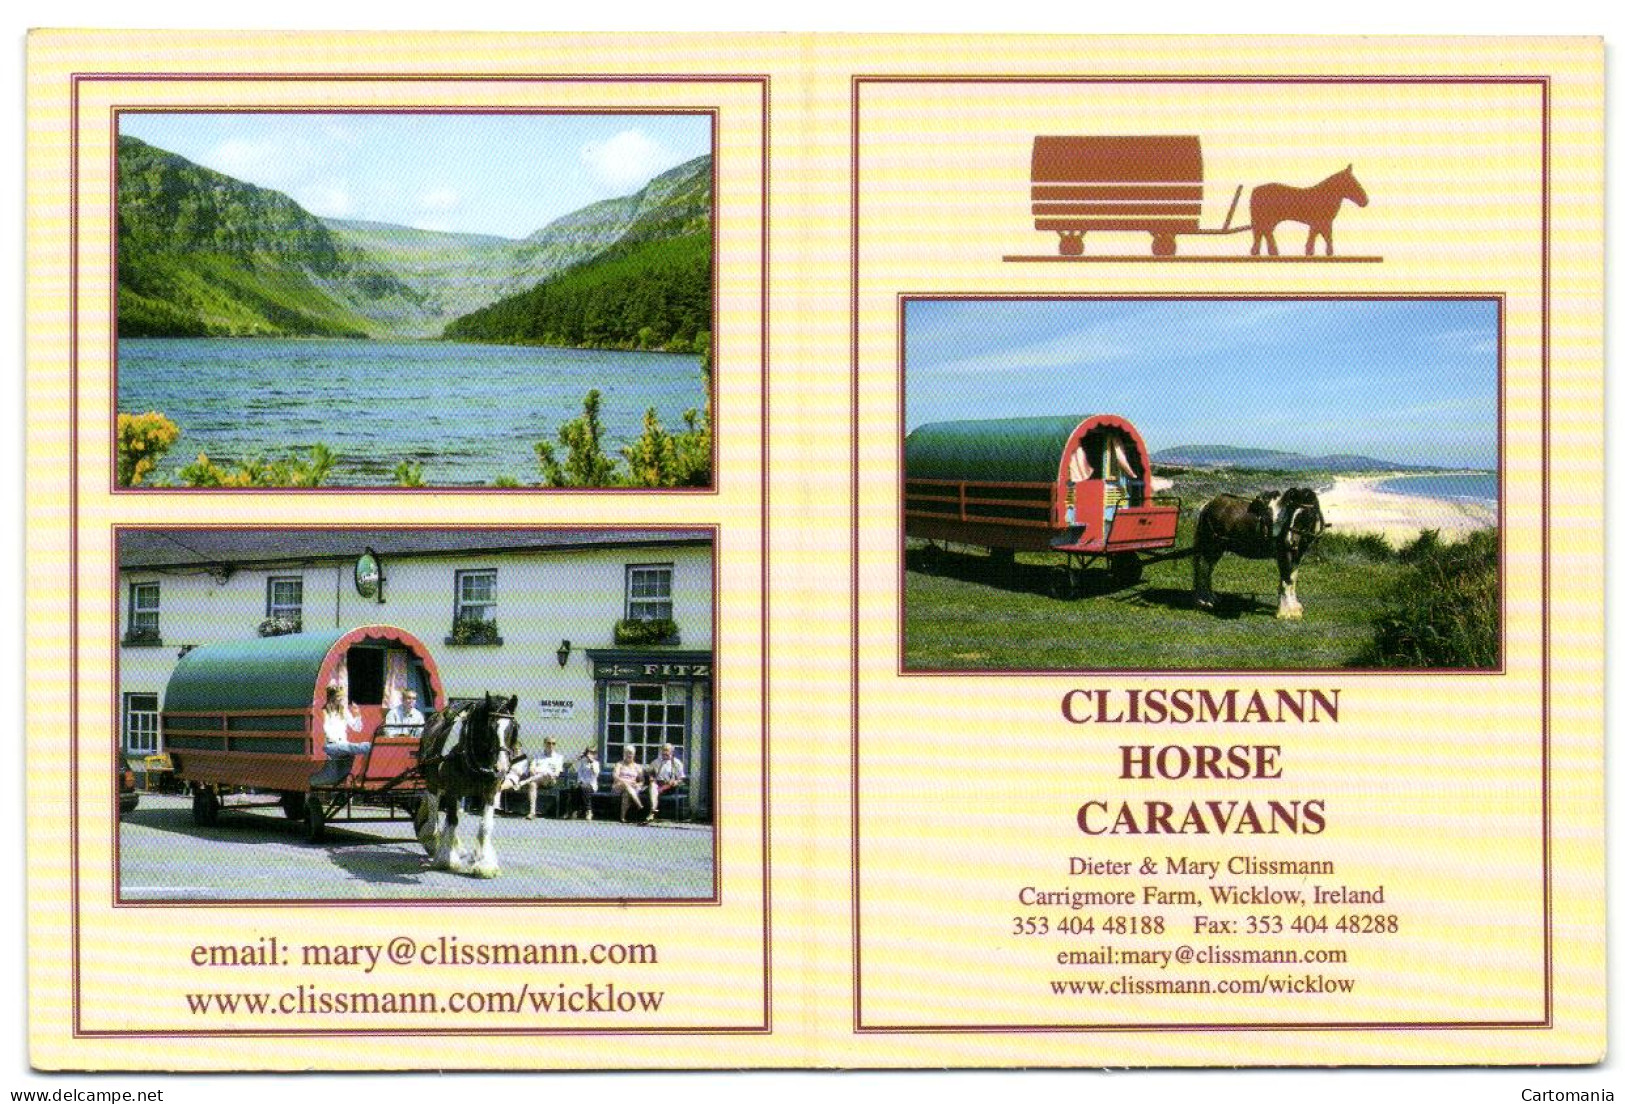 Carrigmore Farm - Wicklow - Clissmann Horse Caravans - Wicklow